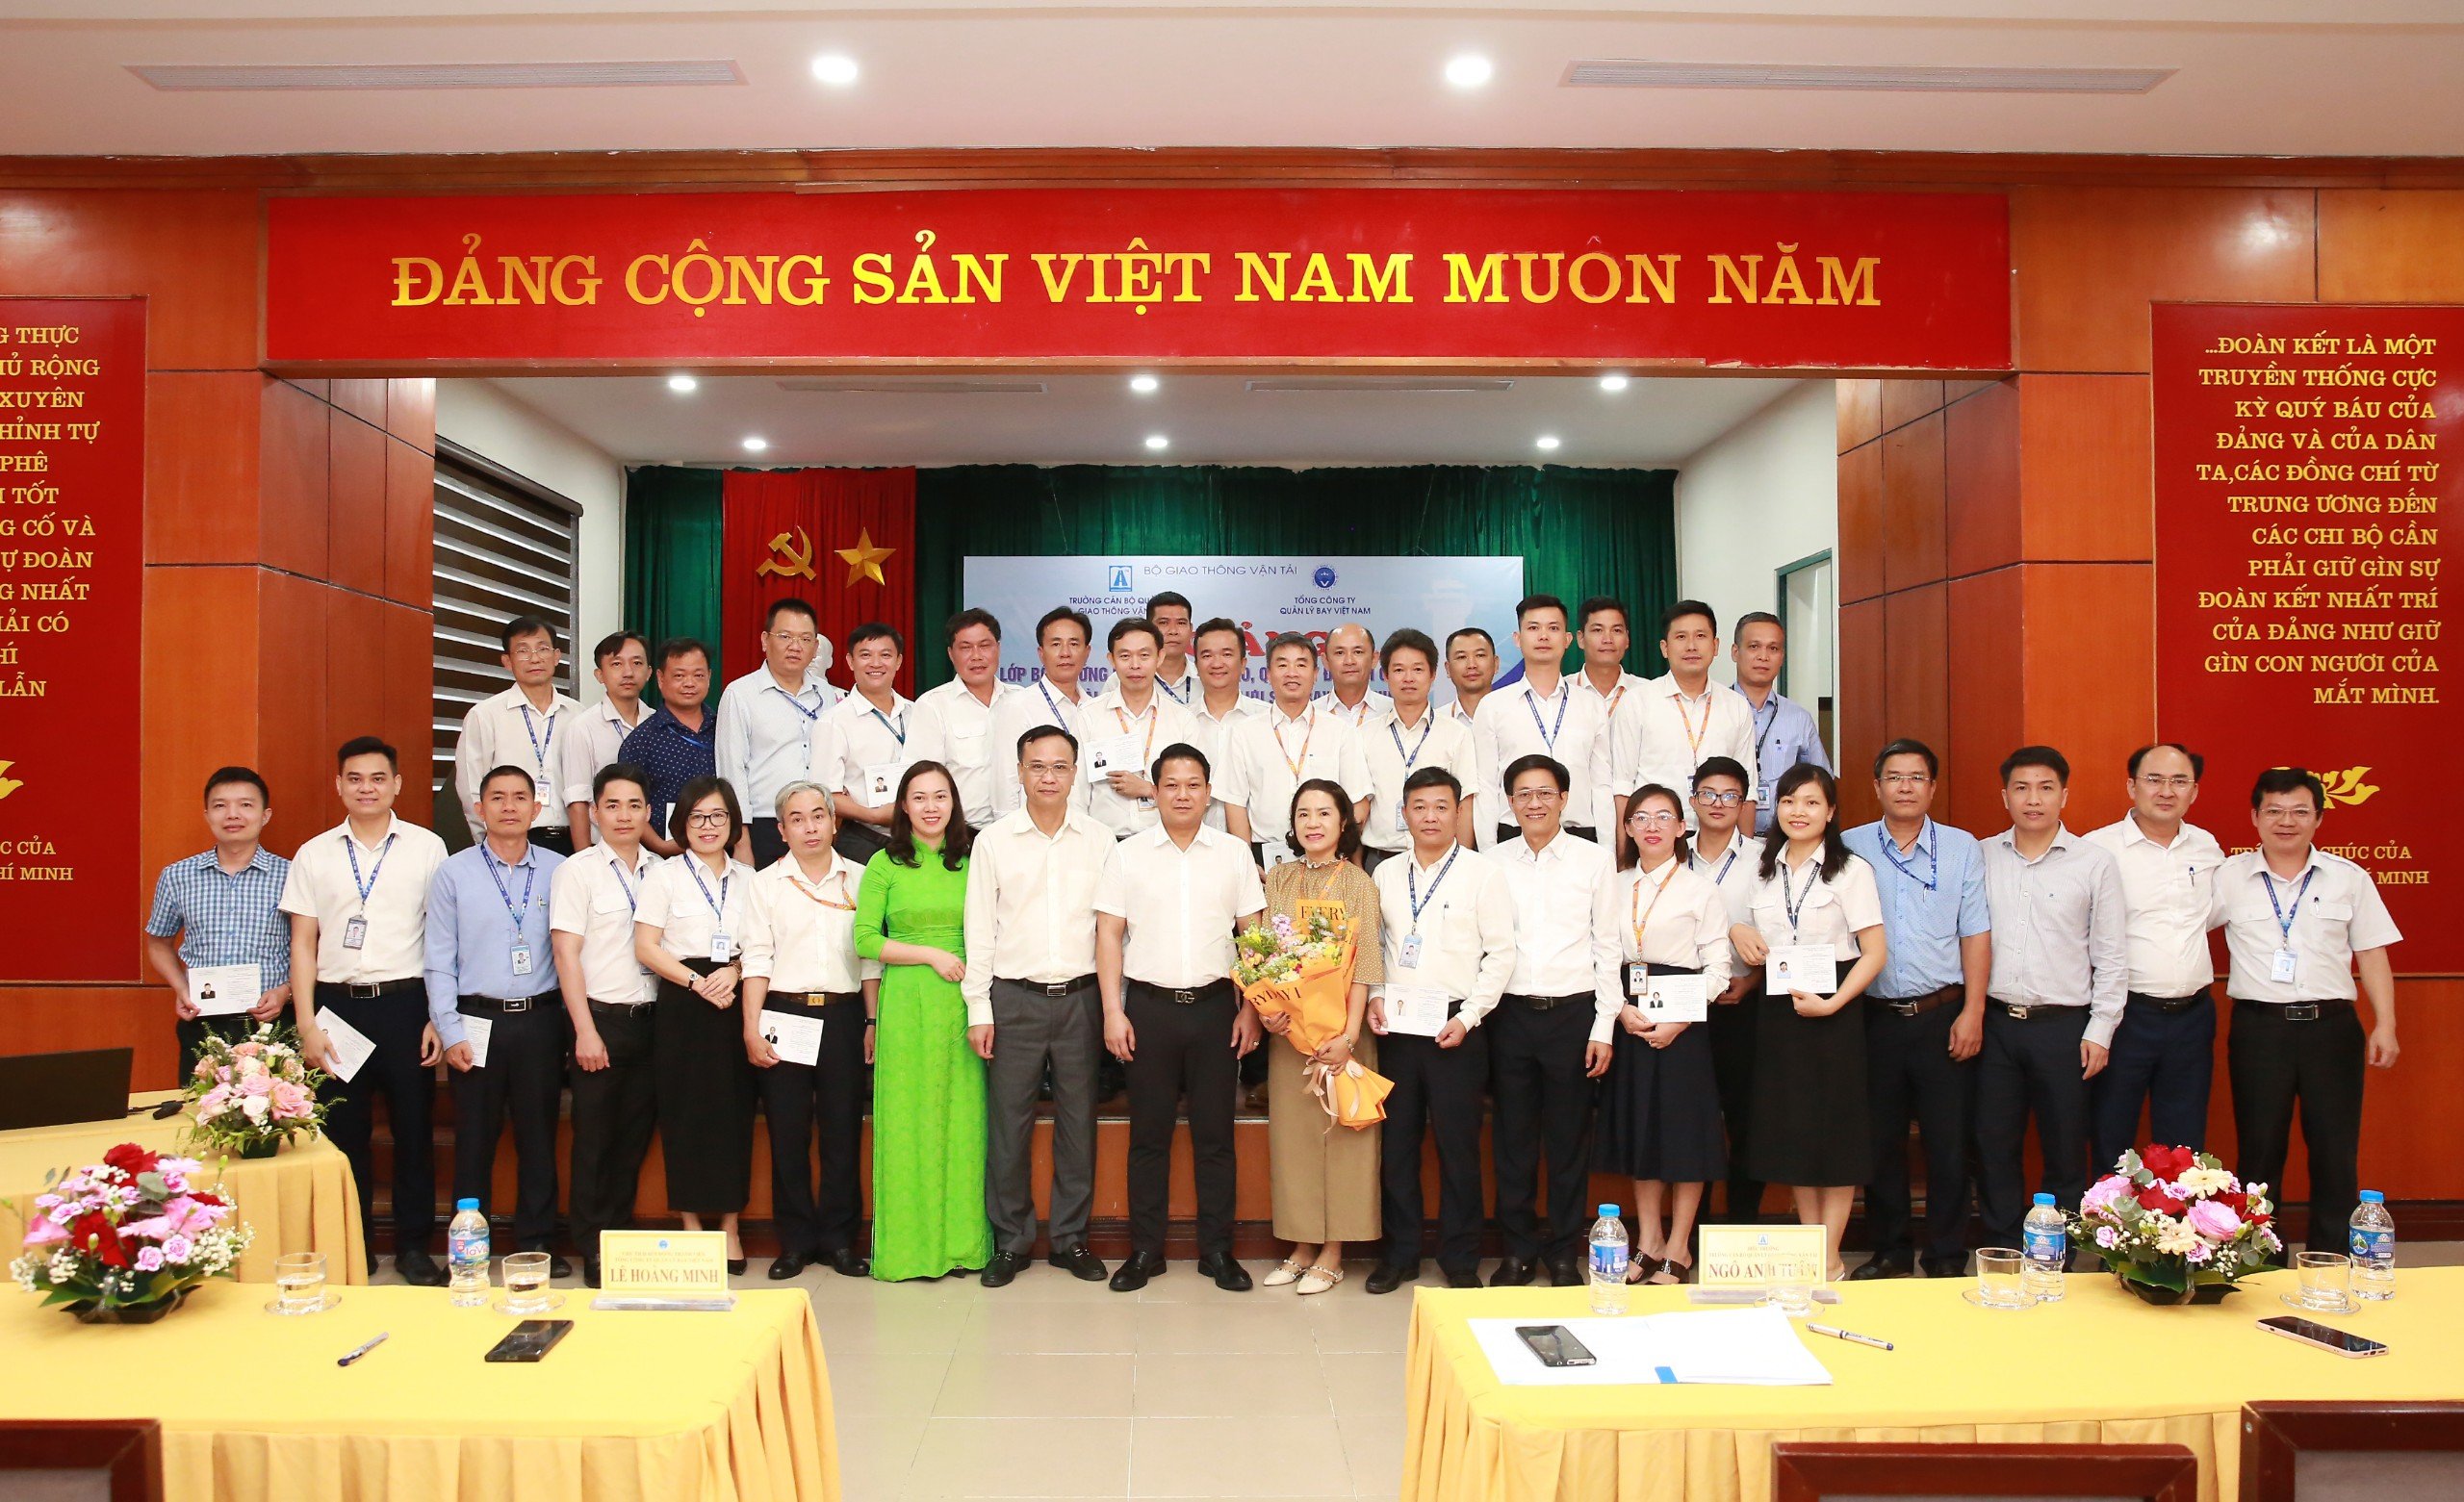 VATM: Bế giảng khóa Bồi dưỡng kỹ năng lãnh đạo, quản lý cho cán bộ quản lý các Đài Kiểm soát không lưu sân bay địa phương khóa 2